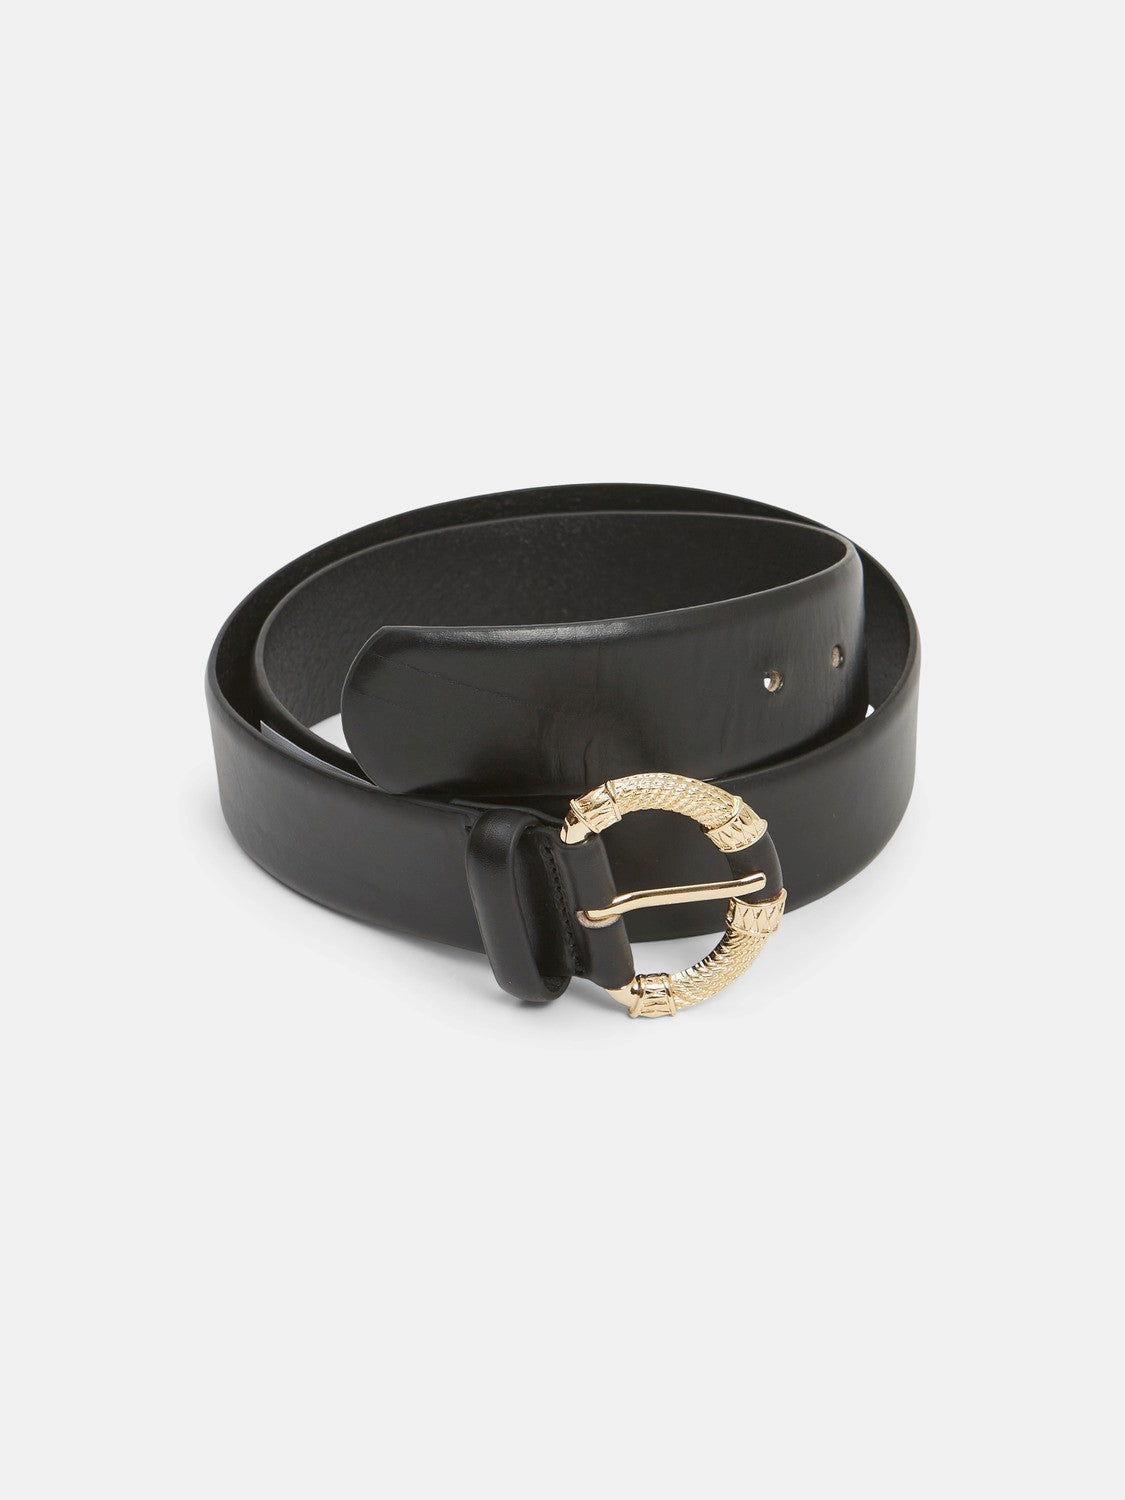 Gold Buckle Black Leather Belt 